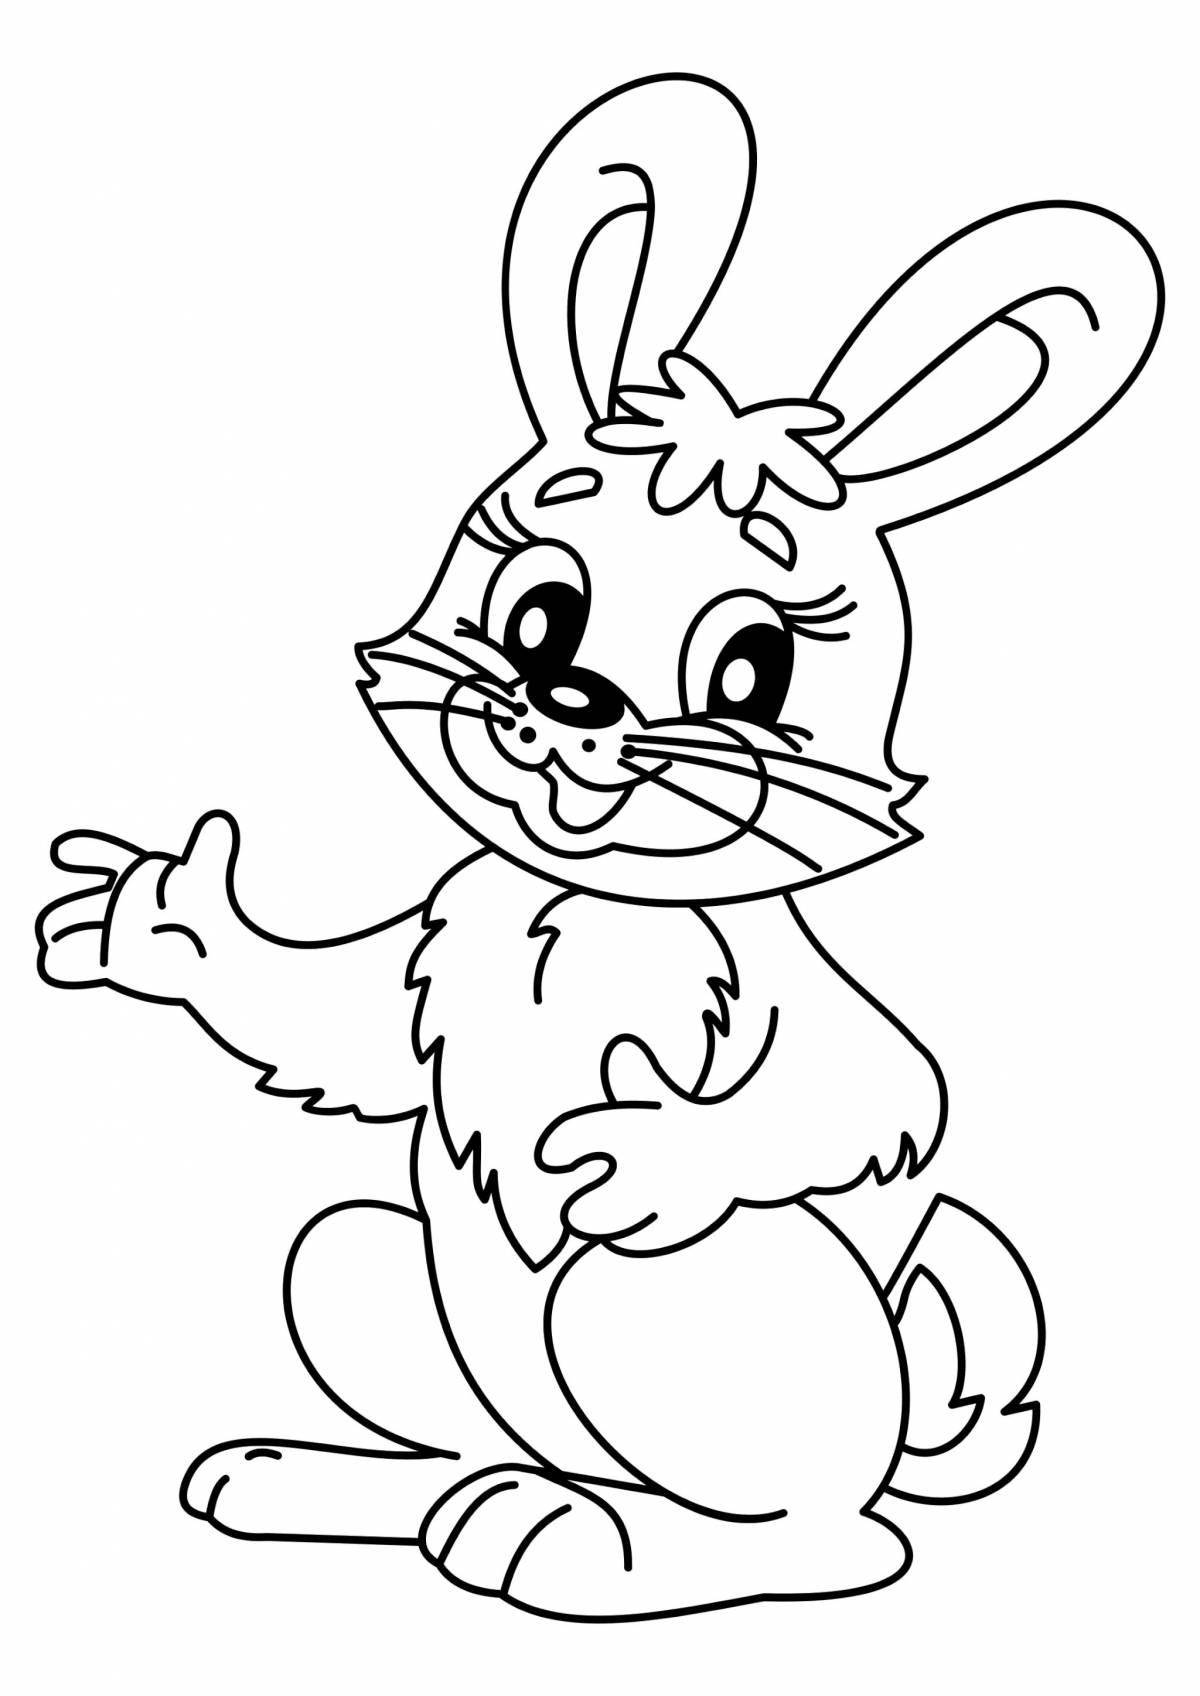 Изысканная раскраска кролика для детей